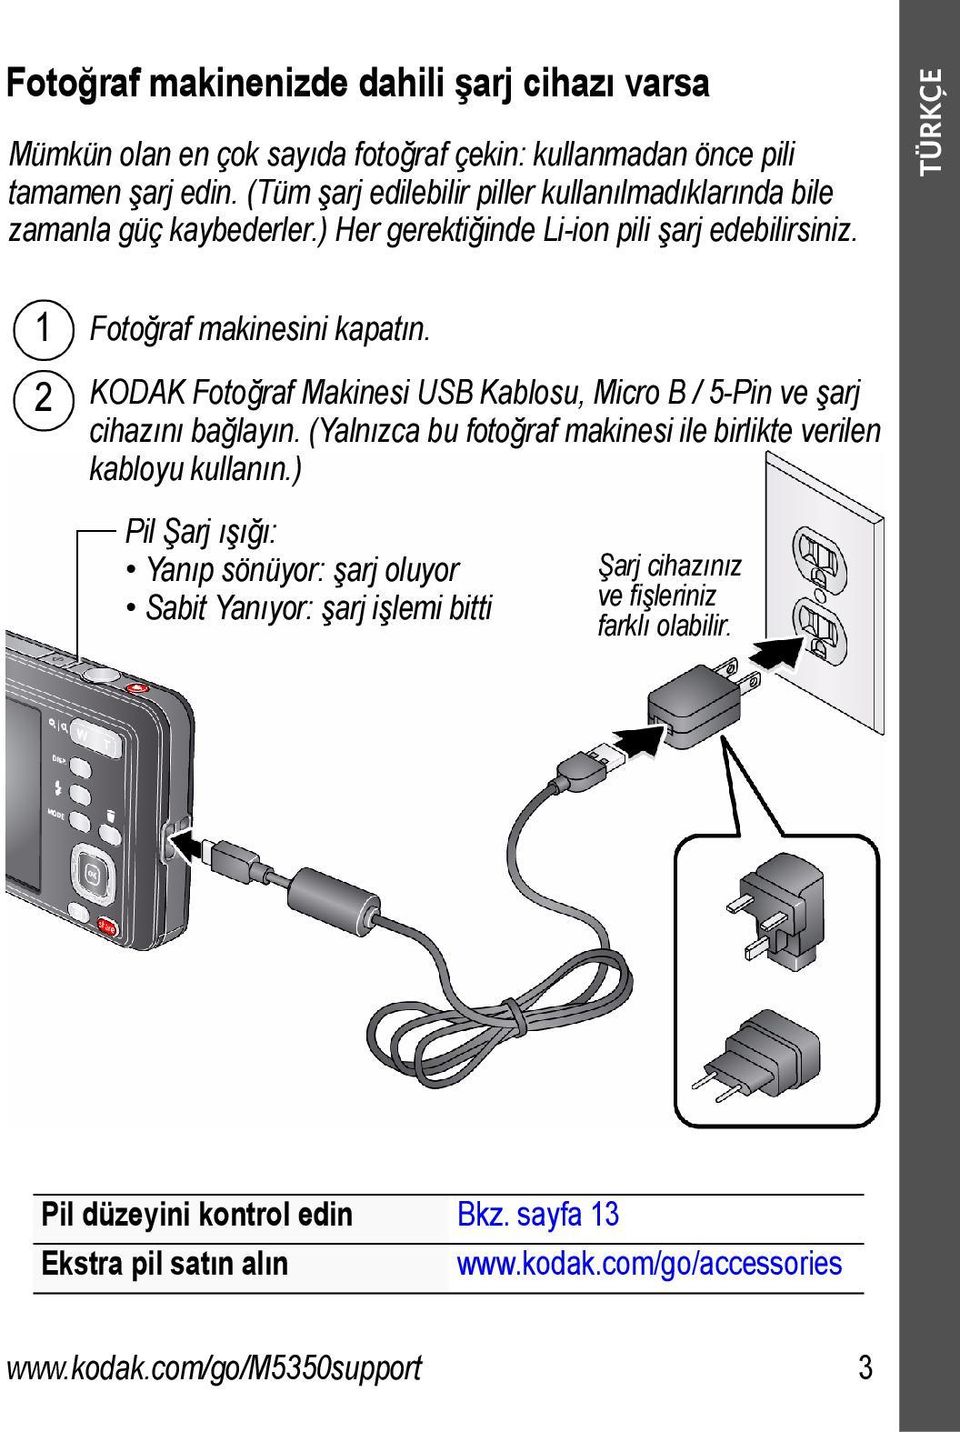 KODAK Fotoğraf Makinesi USB Kablosu, Micro B / 5-Pin ve şarj cihazını bağlayın. (Yalnızca bu fotoğraf makinesi ile birlikte verilen kabloyu kullanın.